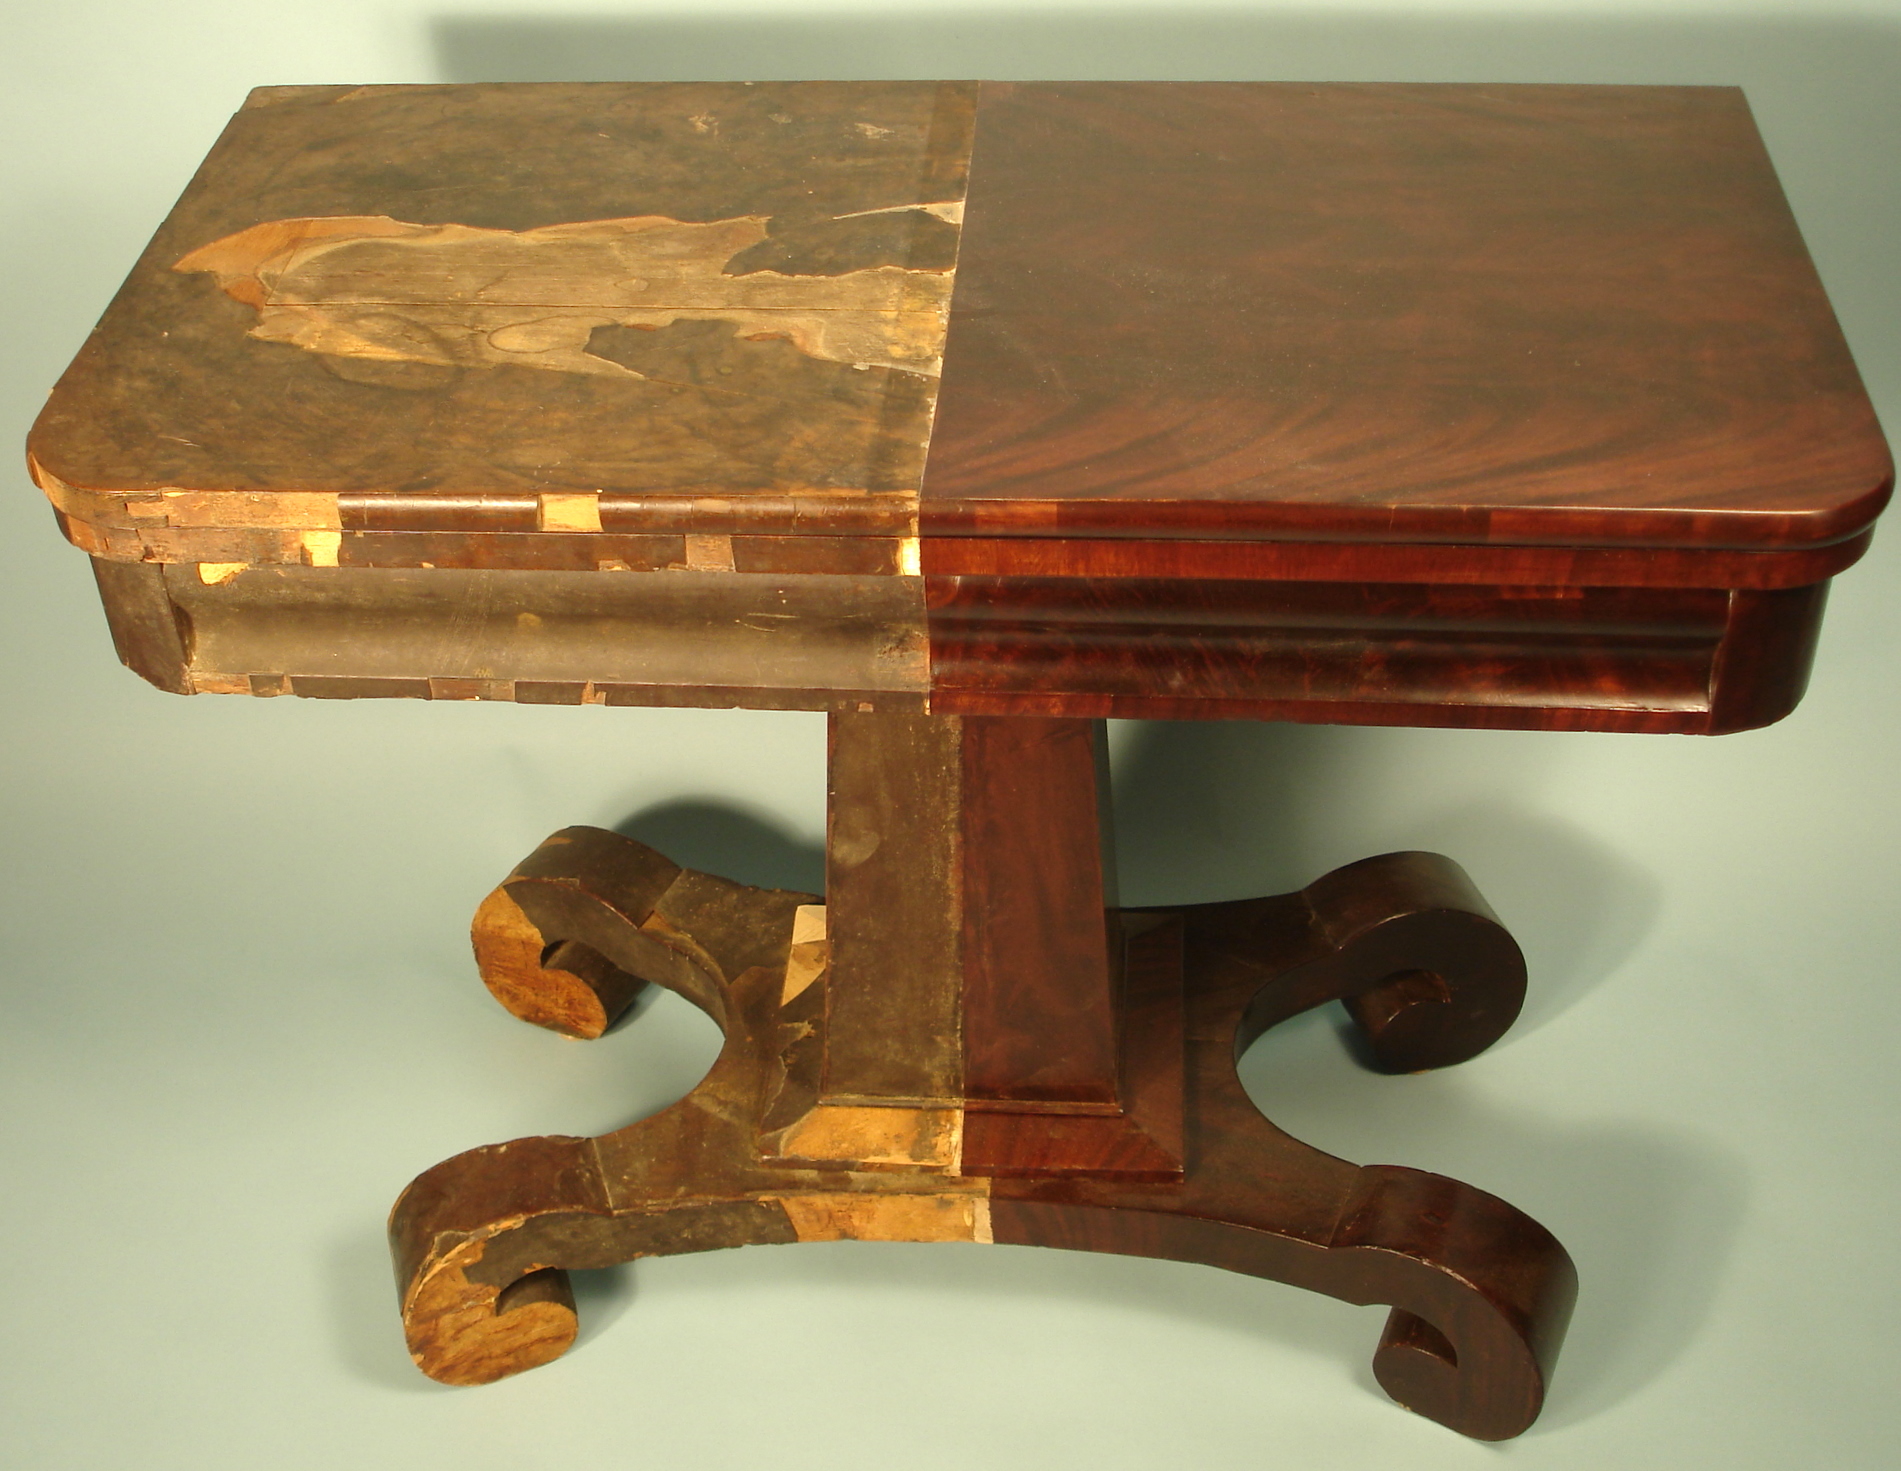 Ремонт реставрация мебели. Мебель из дерева лакированная. Деревянный лакированный стол. Старая лакированная мебель. Реставрируем деревянный столик.